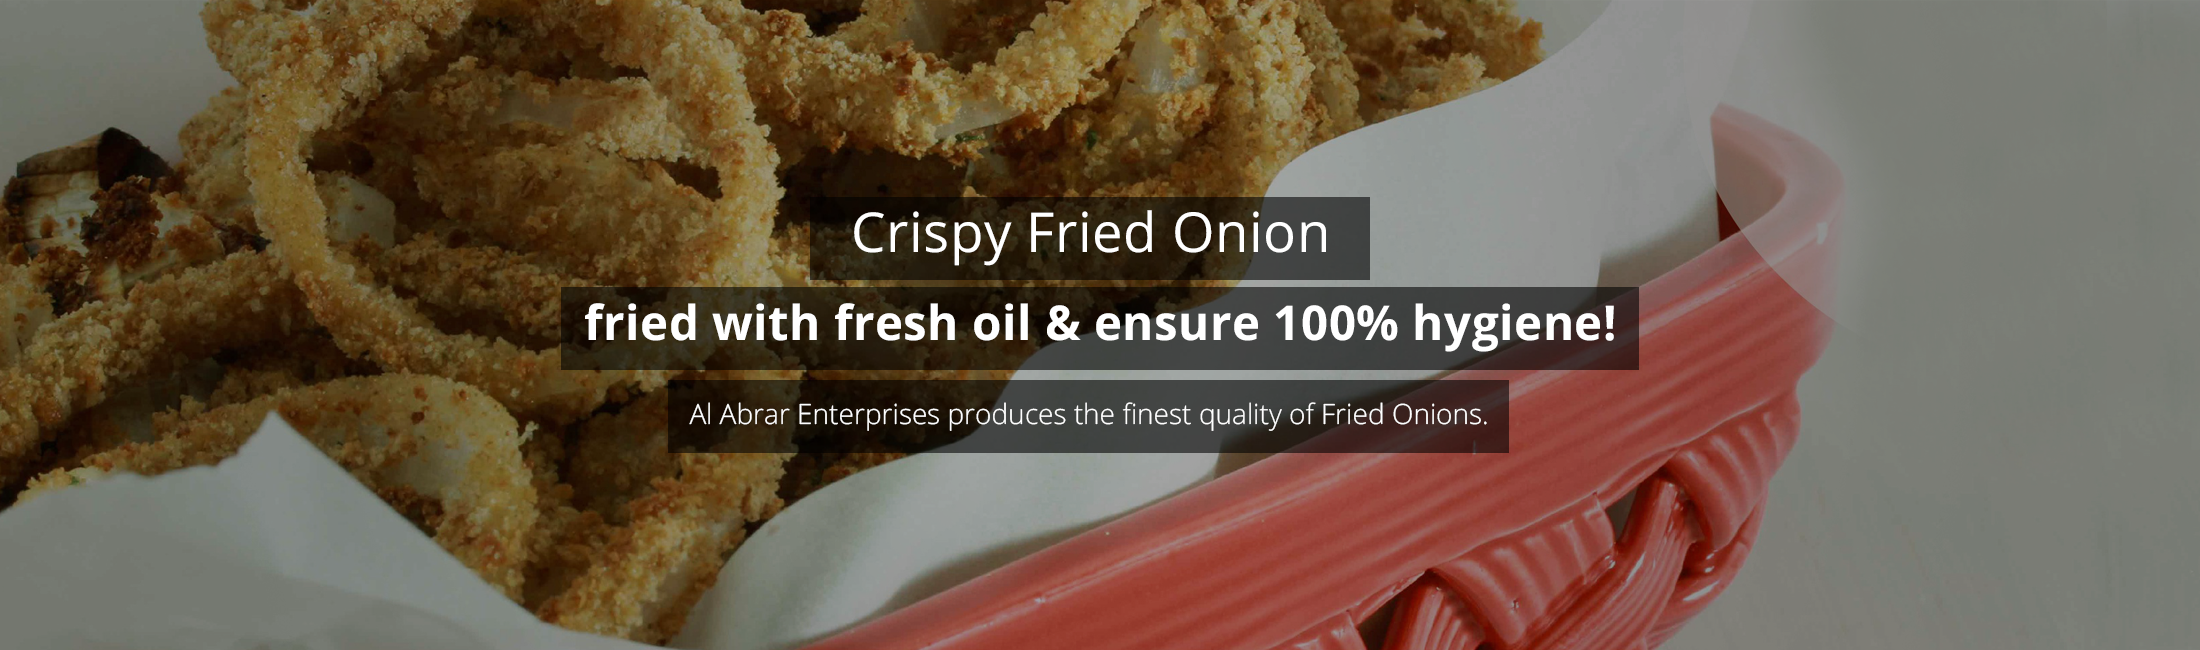 Crispy-Fried-Onion